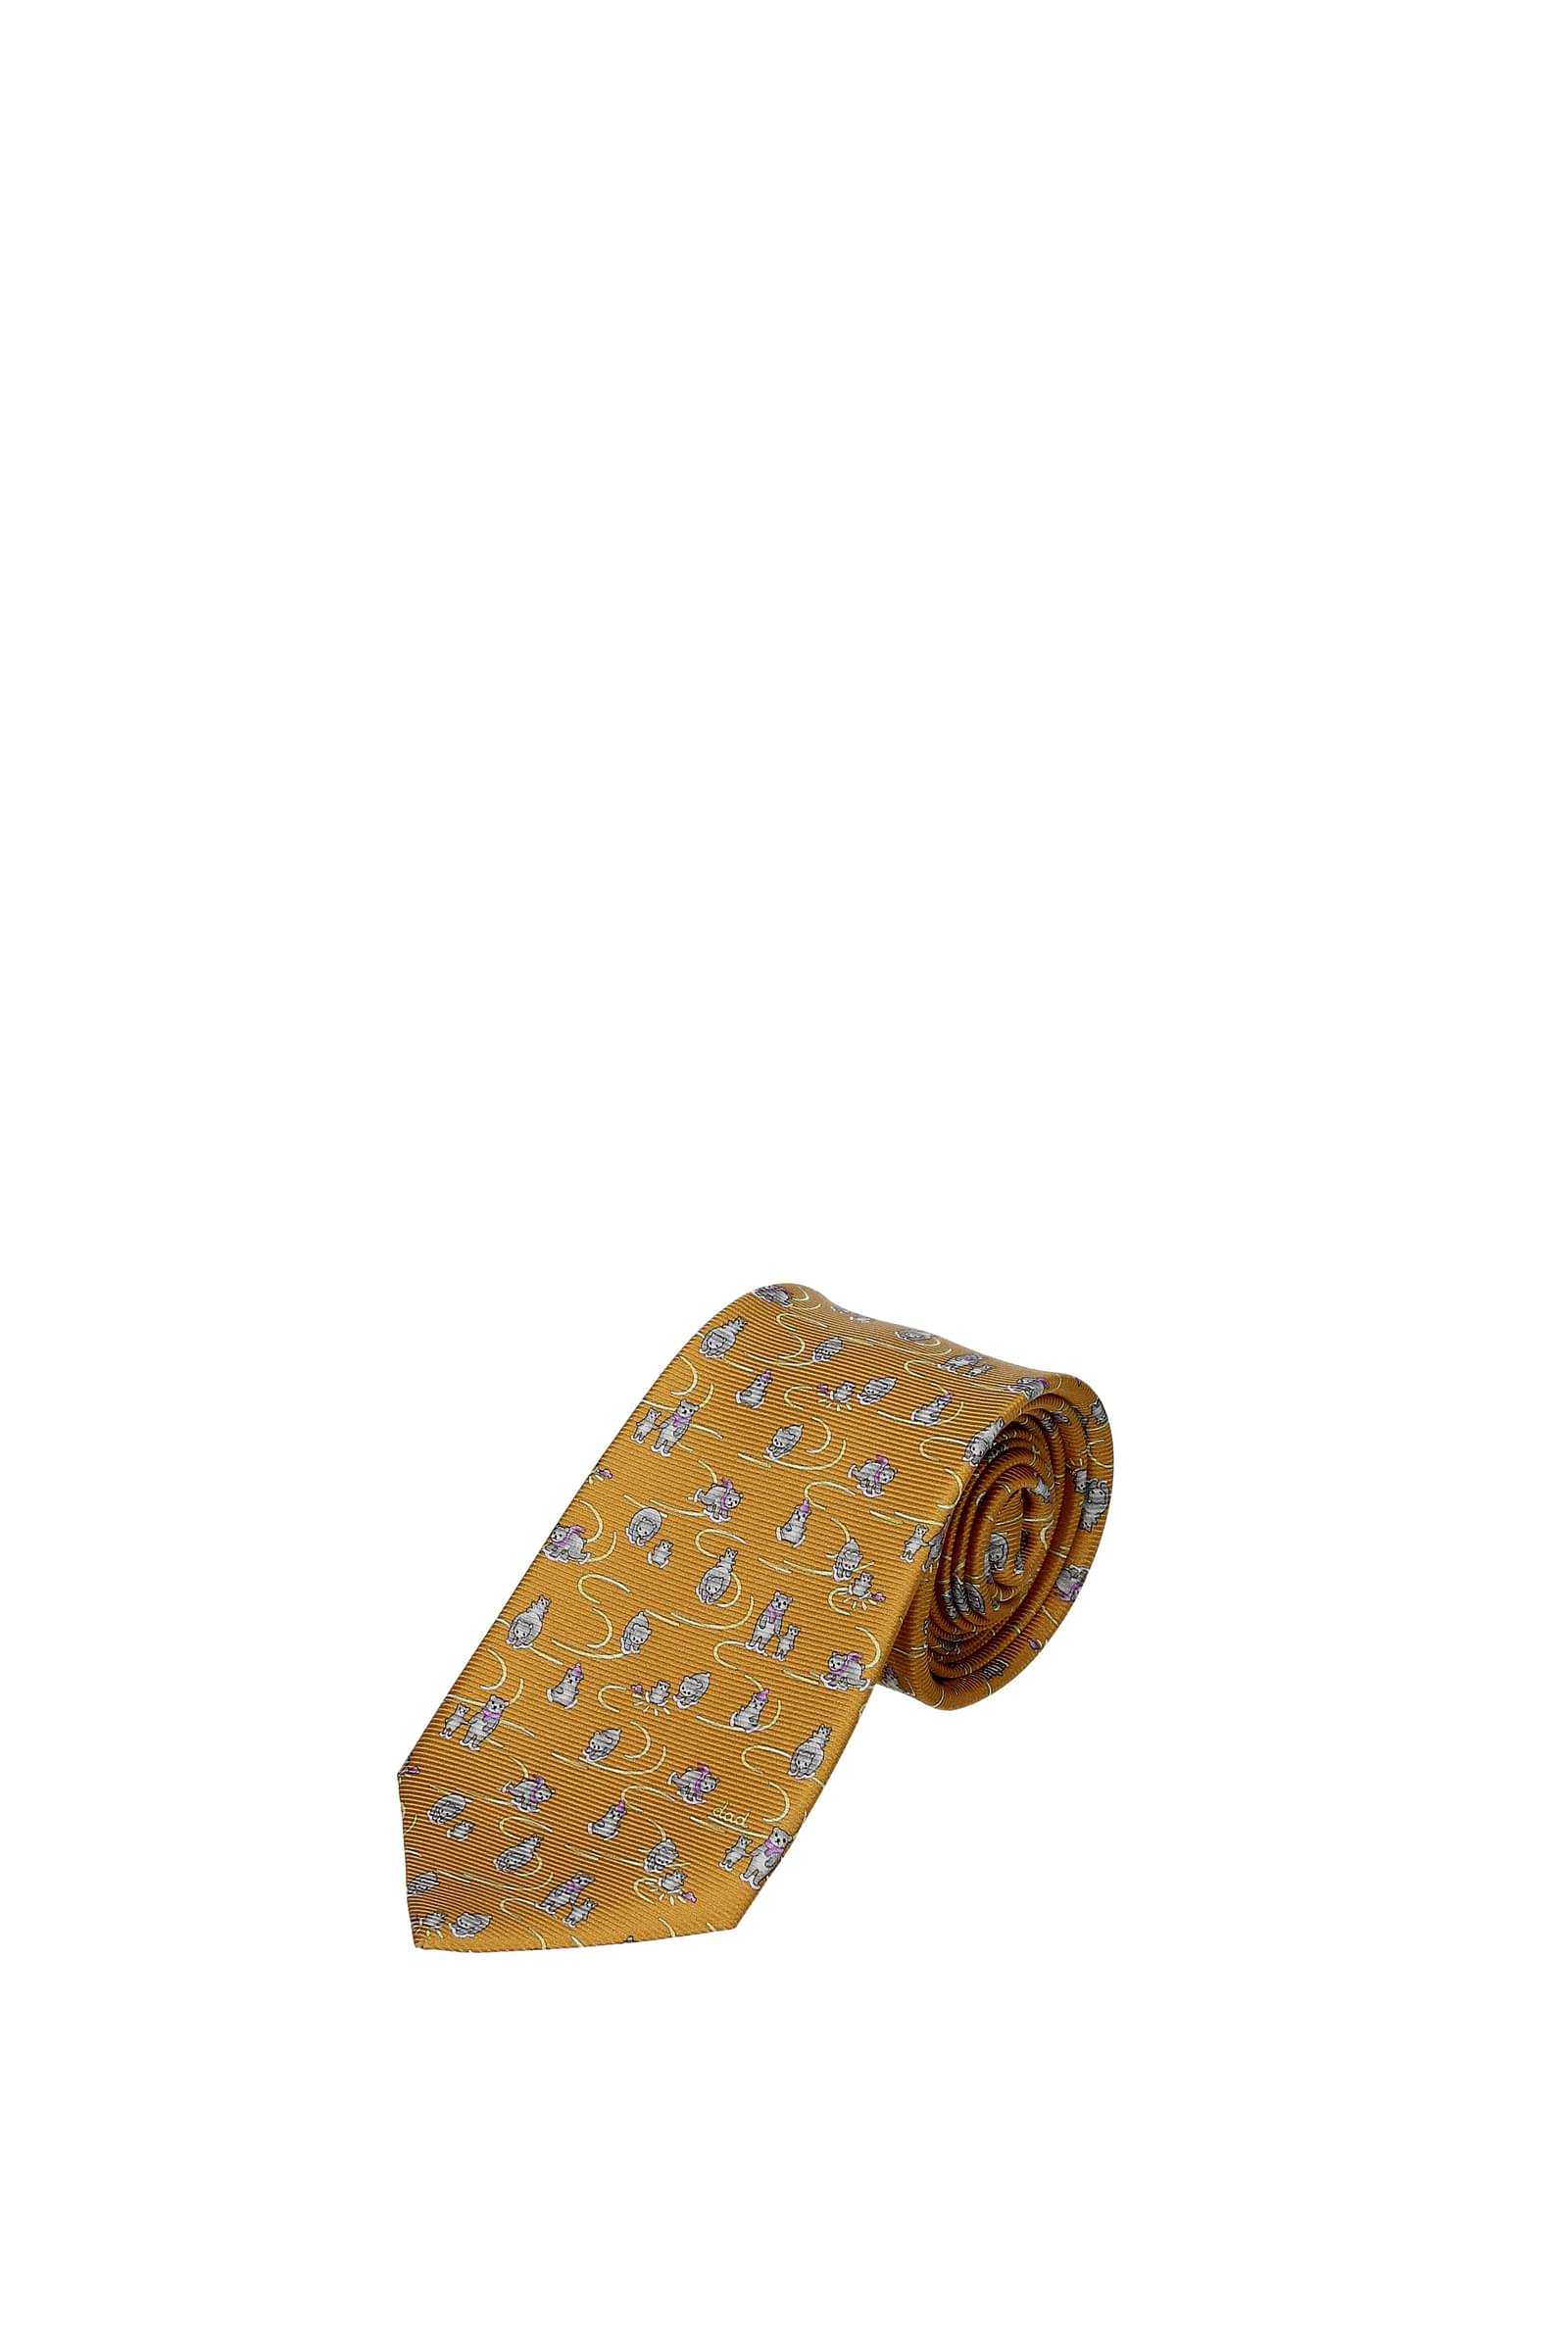 ブルガリ ネクタイ シルク100％ イエロー 黄色 小物 ビジネスマン 紳士 おしゃれ メンズ 男性 BVLGARI necktie yellow silk